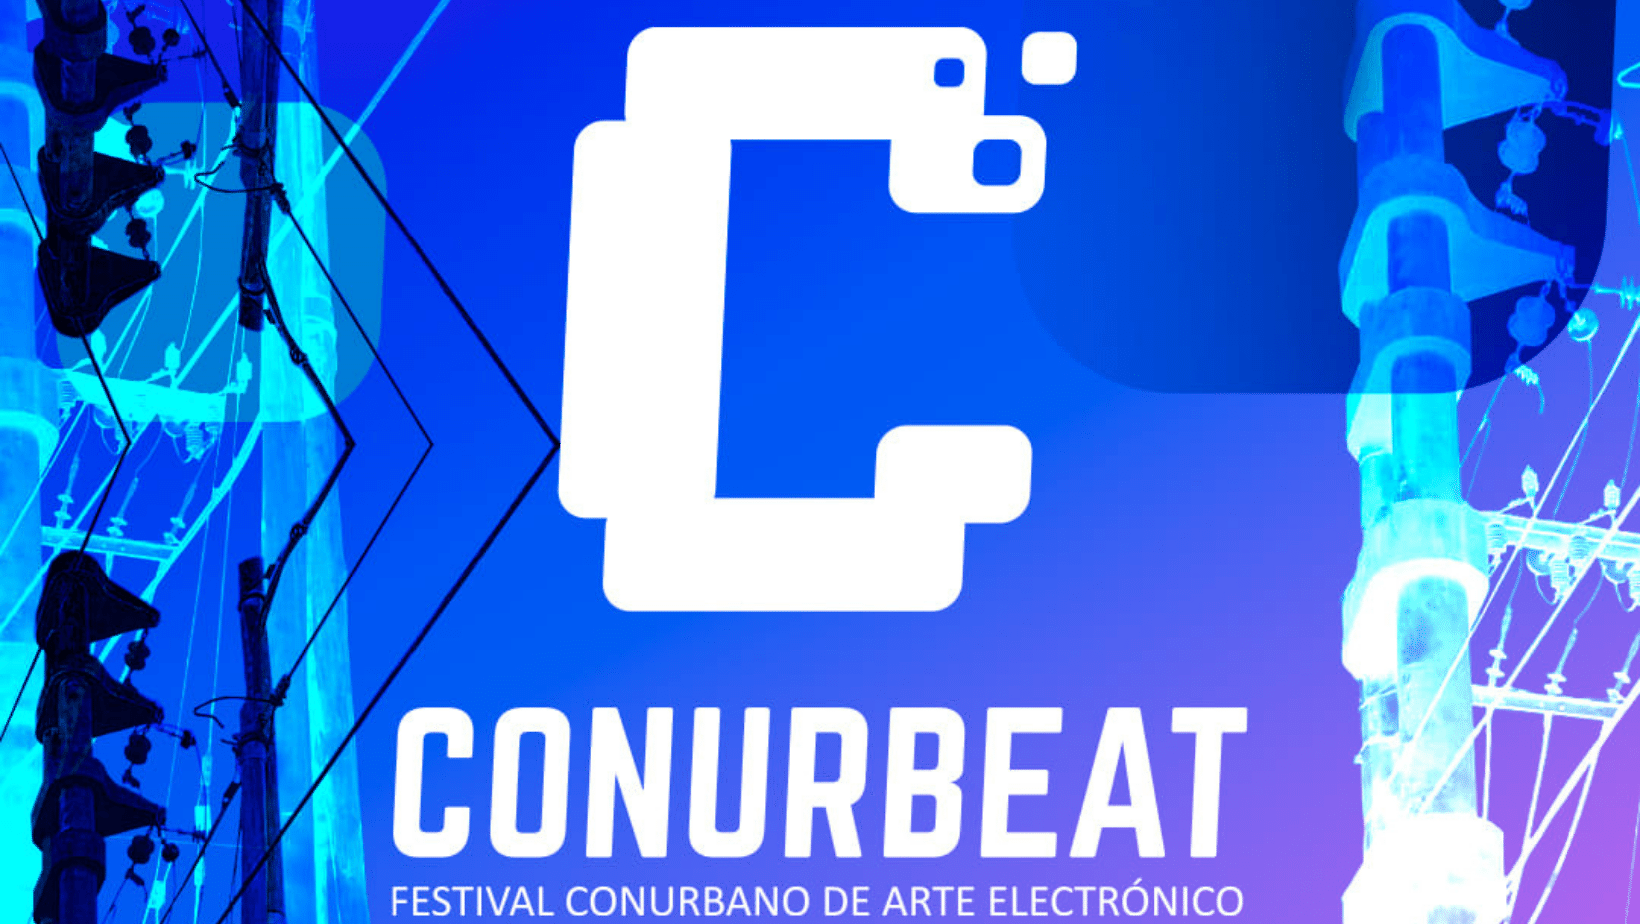 Vuelve el Festival Conurbeat, un espacio para las artes electrónicas del conurbano